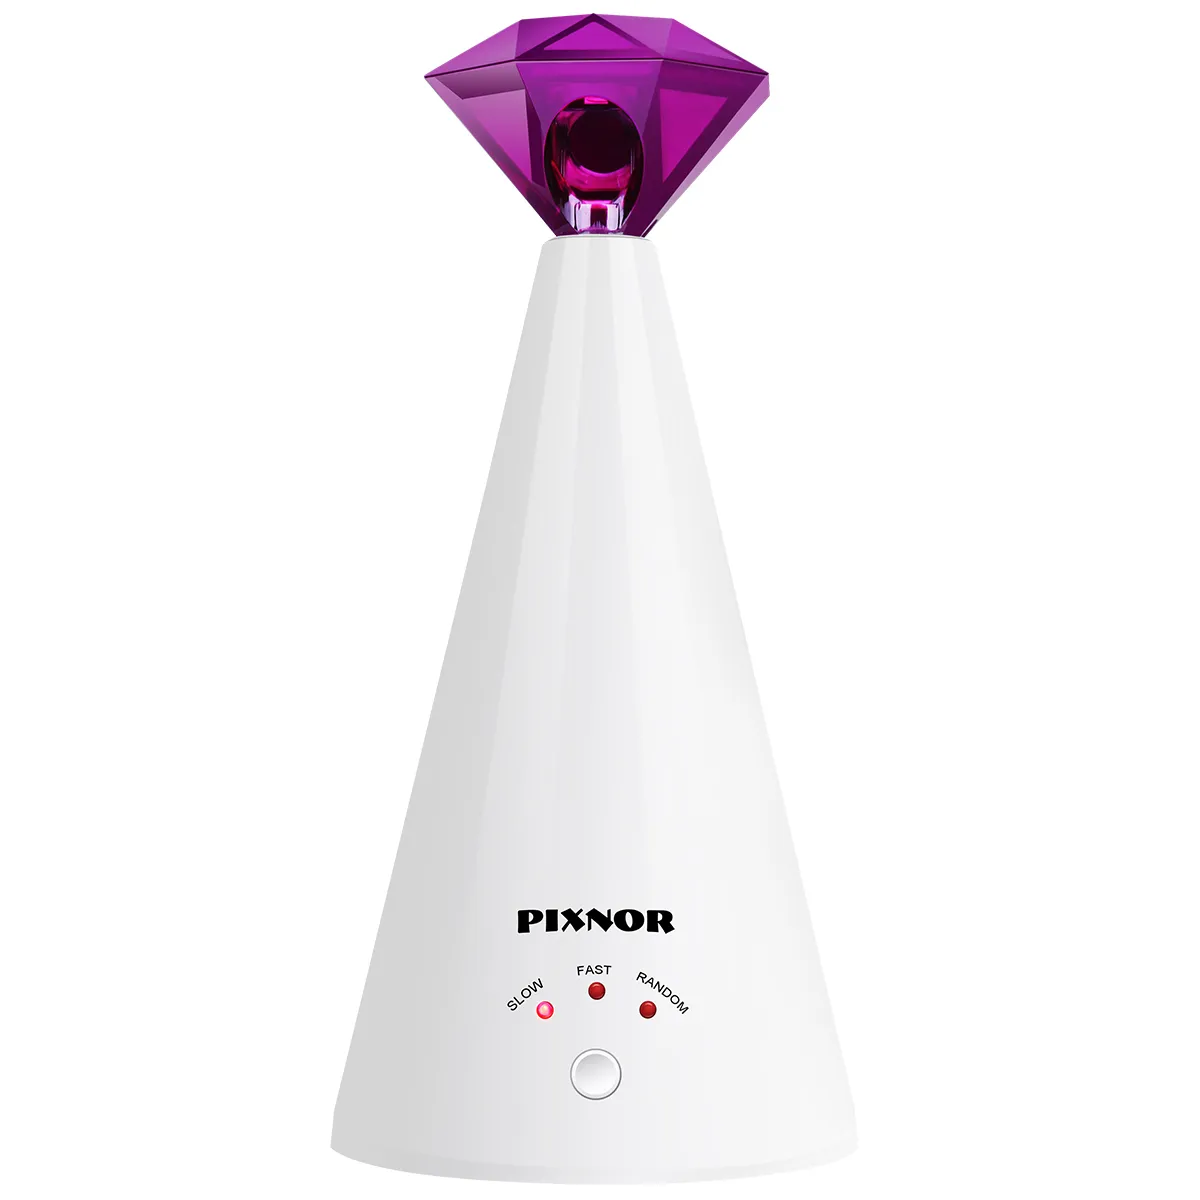 Pixnor الذكية الليزر إغاظة جهاز الكهربائية لعبة المنزل التفاعلية القط قابل للتعديل 3 سرعات peter (الأرجواني) LJ201125